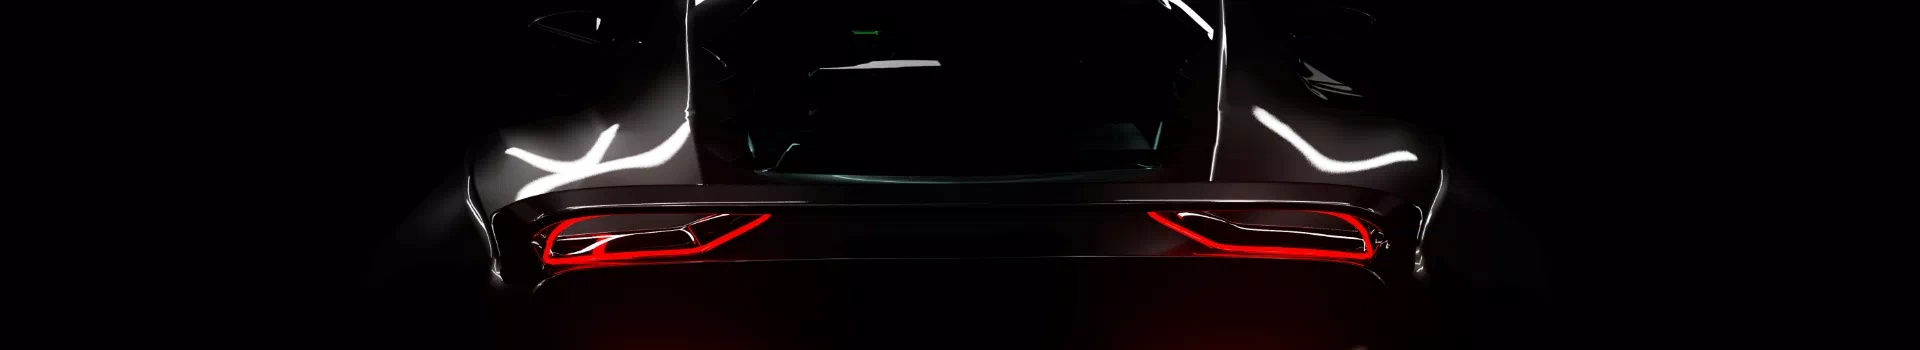 Tył nowoczesnego samochodu na ciemnym tle